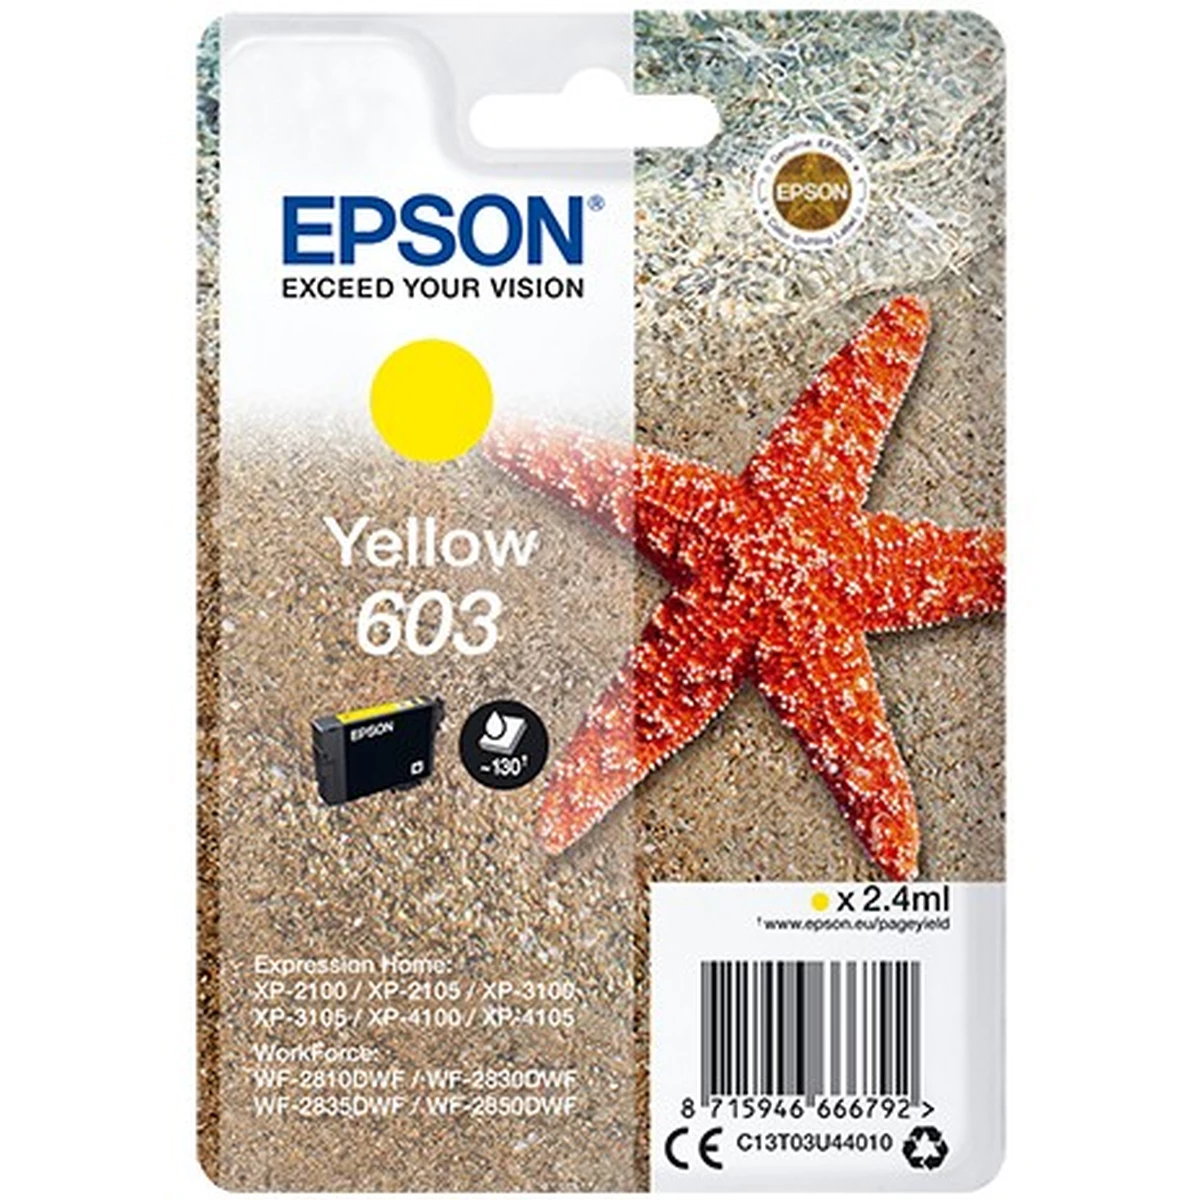 Epson Druckerpatrone '603' gelb 2,4 ml